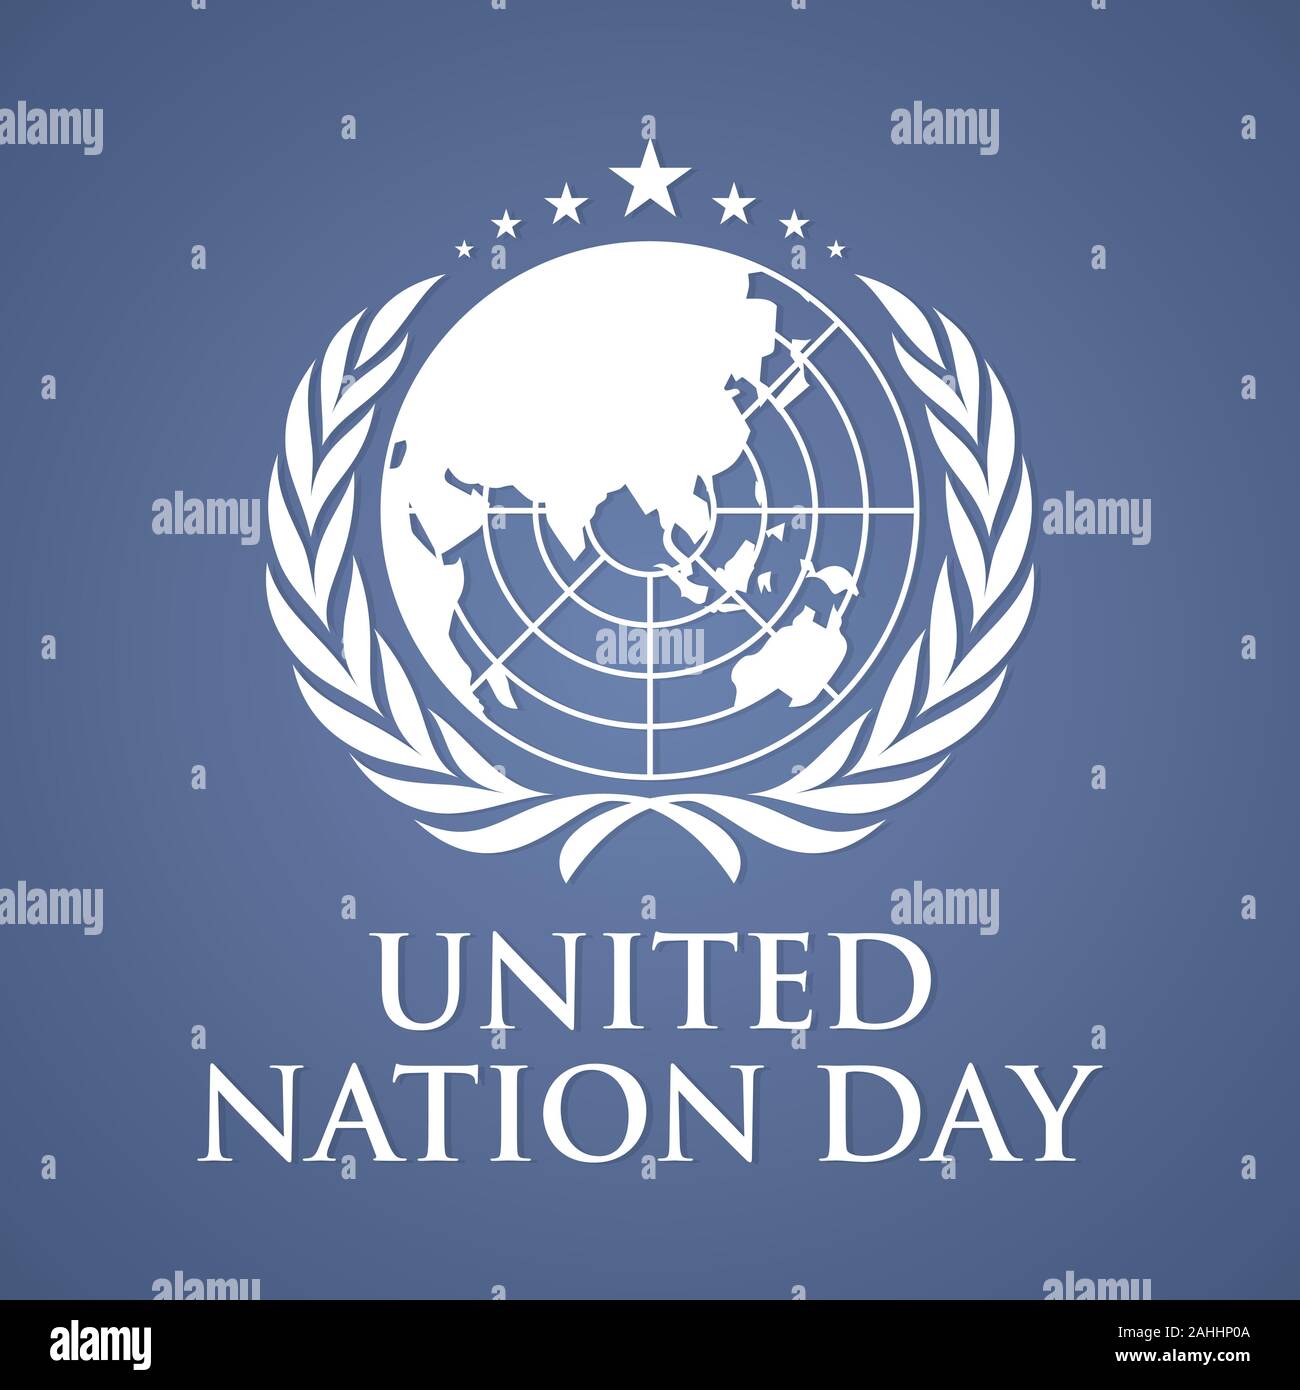 Chúc mừng ngày Liên Hiệp Quốc! Vector thư pháp nền và văn bản ngày này có thể tạo ra một tác phẩm nghệ thuật tuyệt đẹp để tỏ lòng tôn trọng đối với sự tôn trọng và hợp tác trên toàn thế giới.